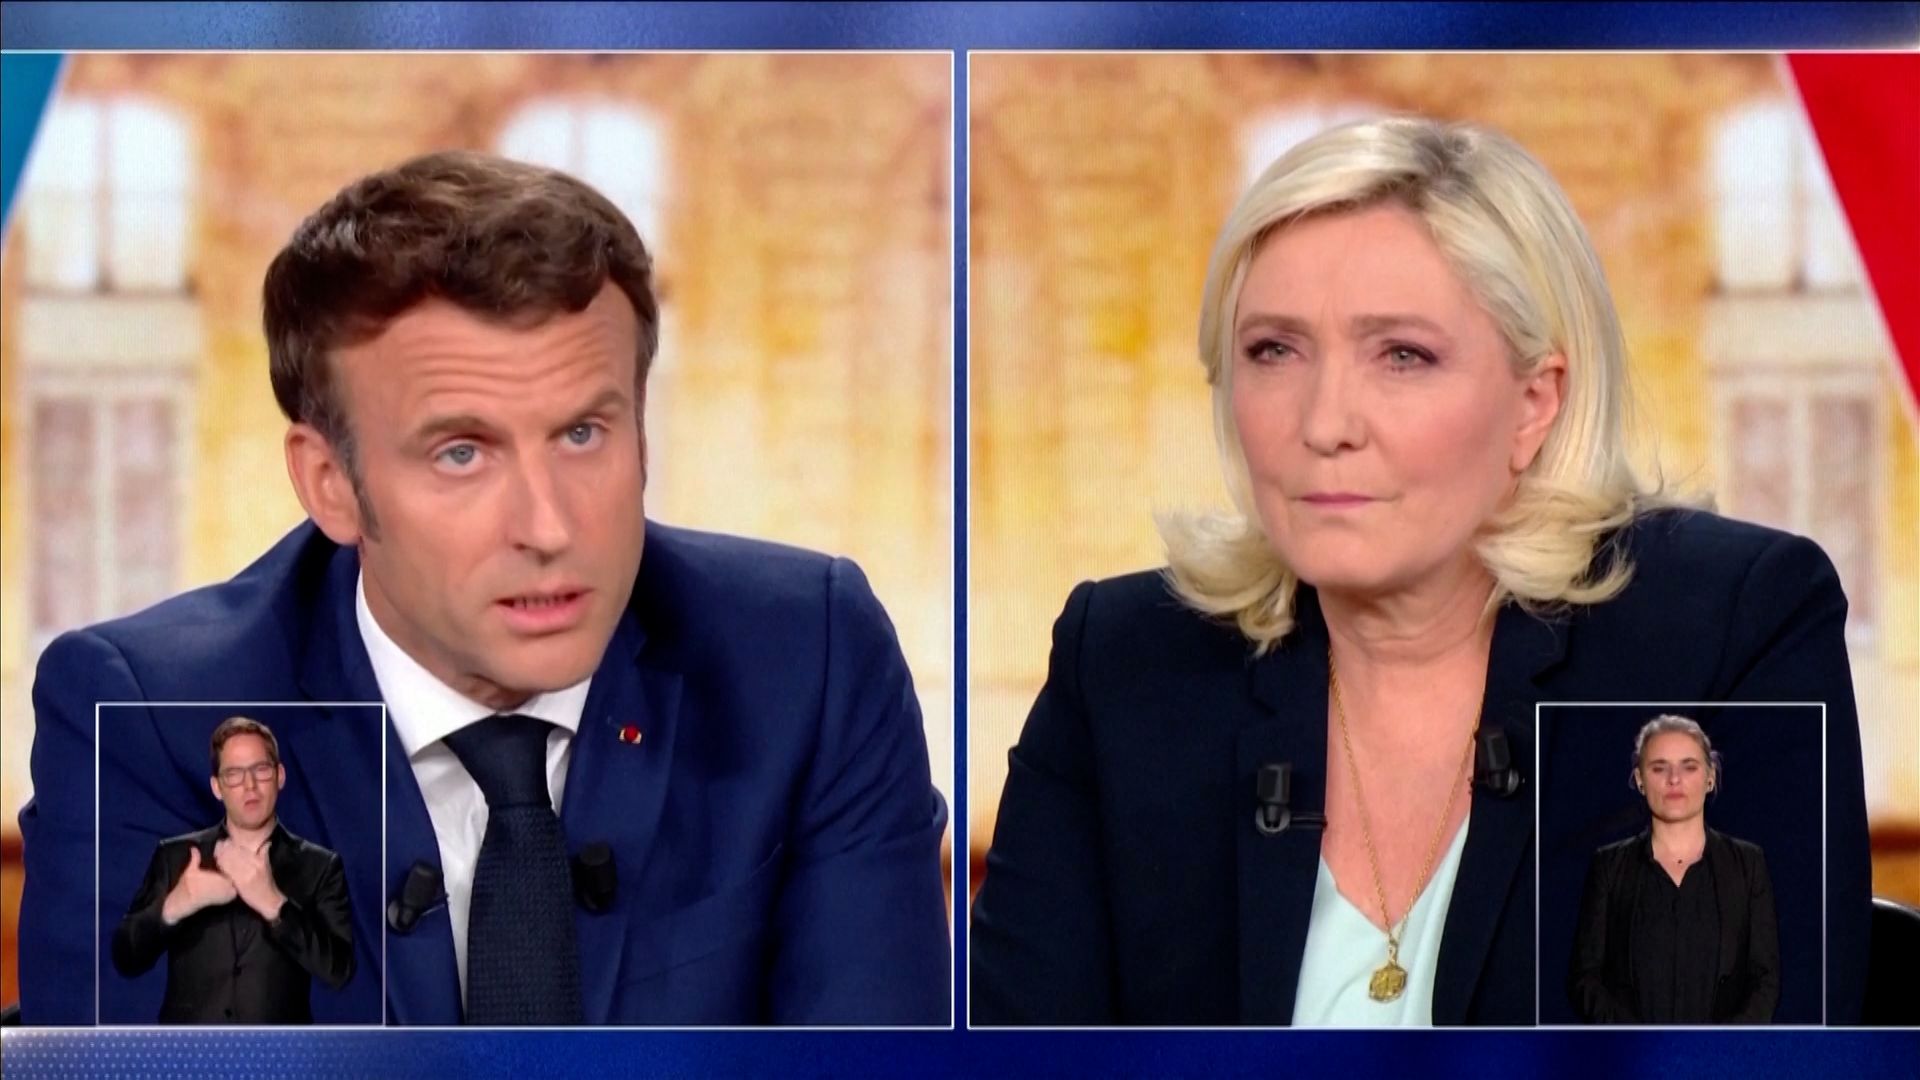 Au cours du débat, Macron a attaqué Le Pen pour ses liens avec la Russie.  Il a également émis un indice tchèque